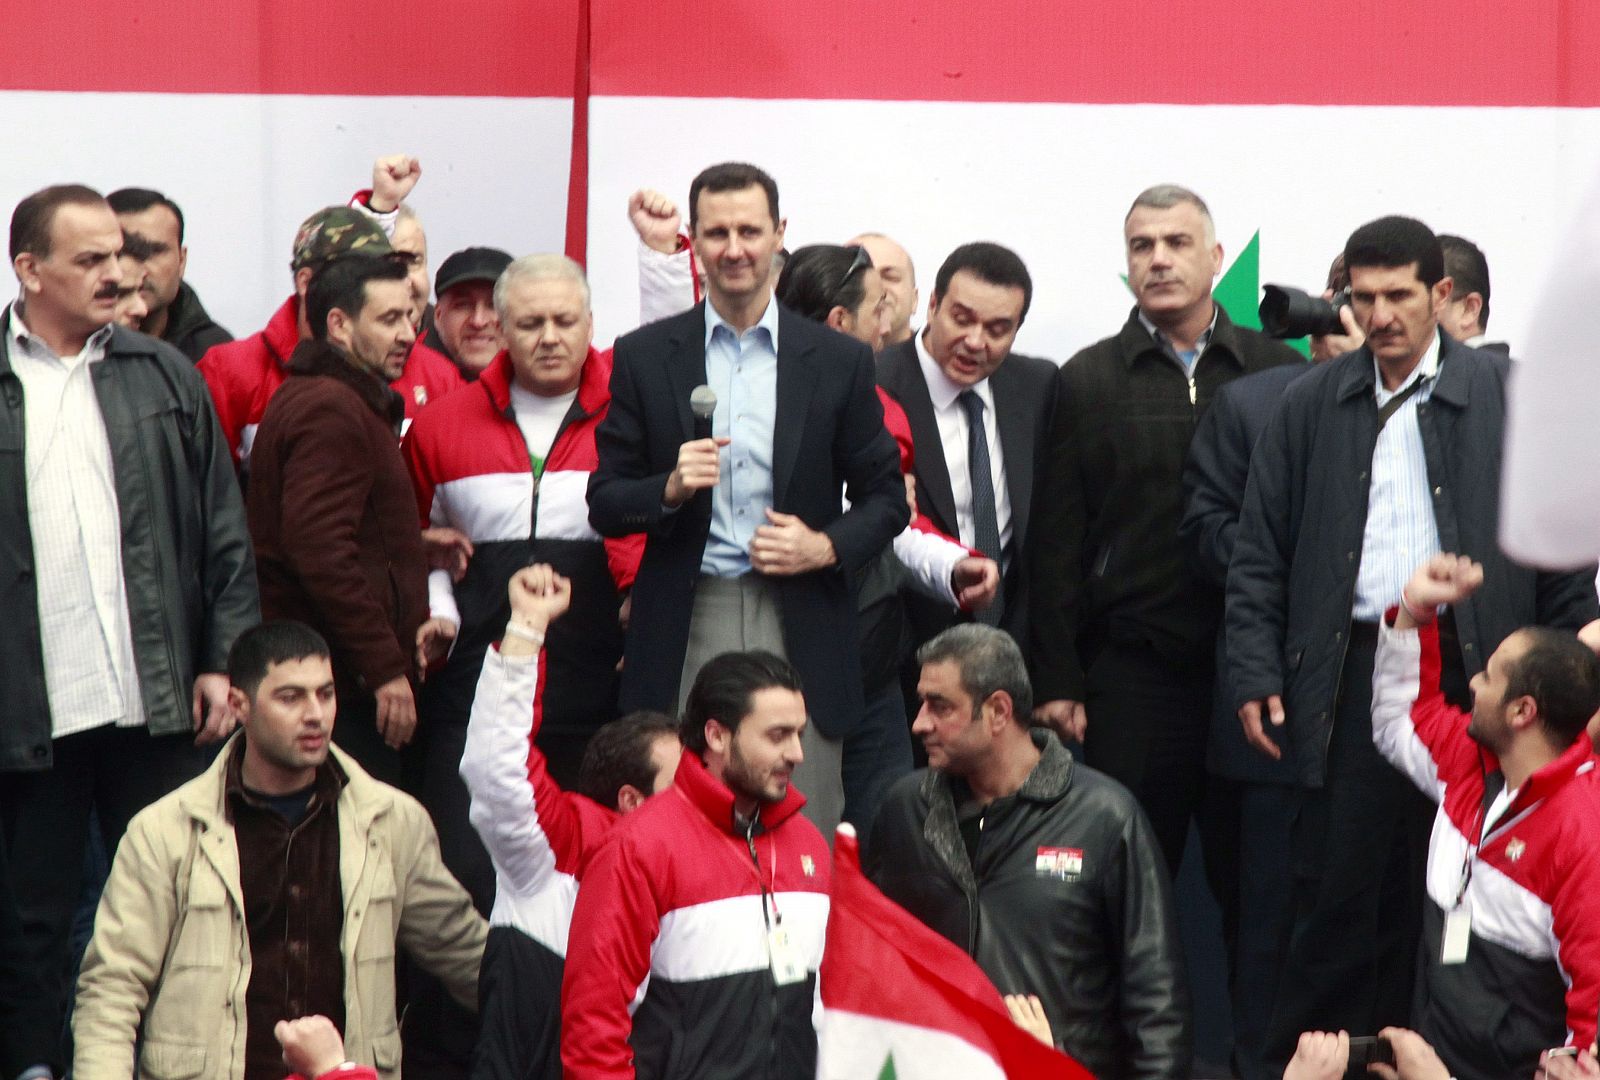 El presidente sirio, Bachar al Asad, pronuncia un discurso ante miles de seguidores en Damasco